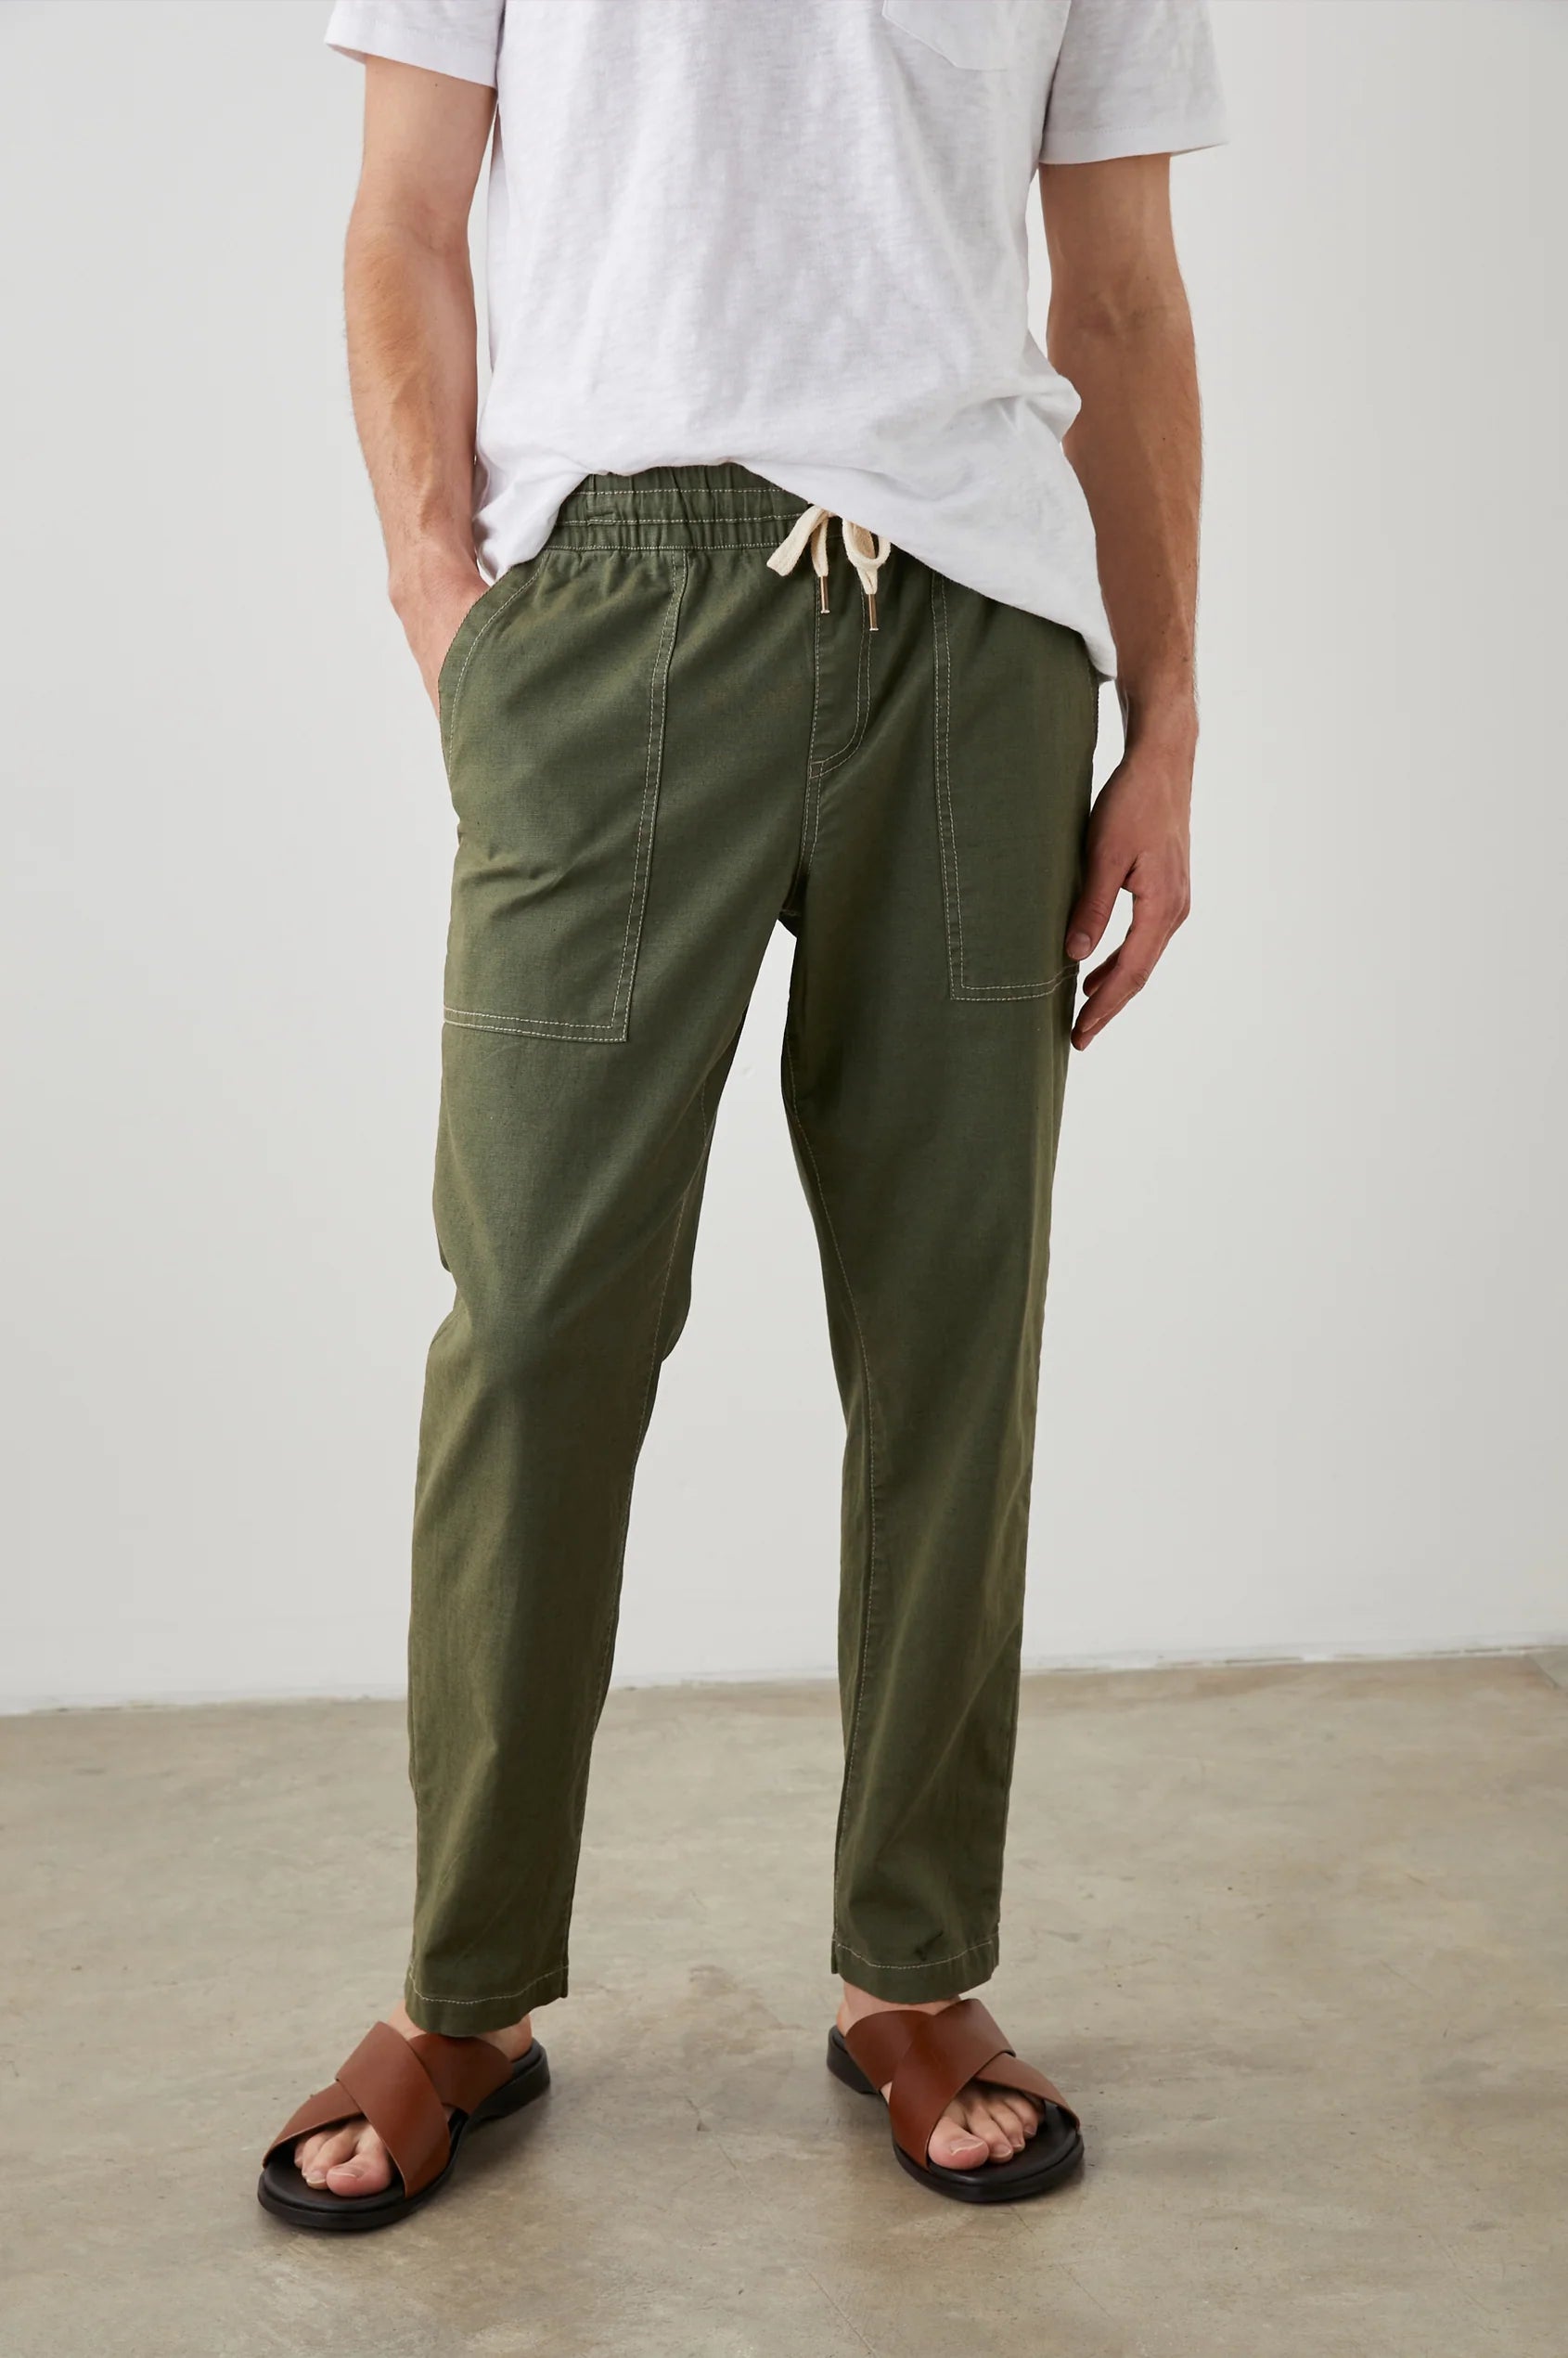 Colin Jogger - Olive | Green pants men, Green pants outfit, Olive green pants  outfit